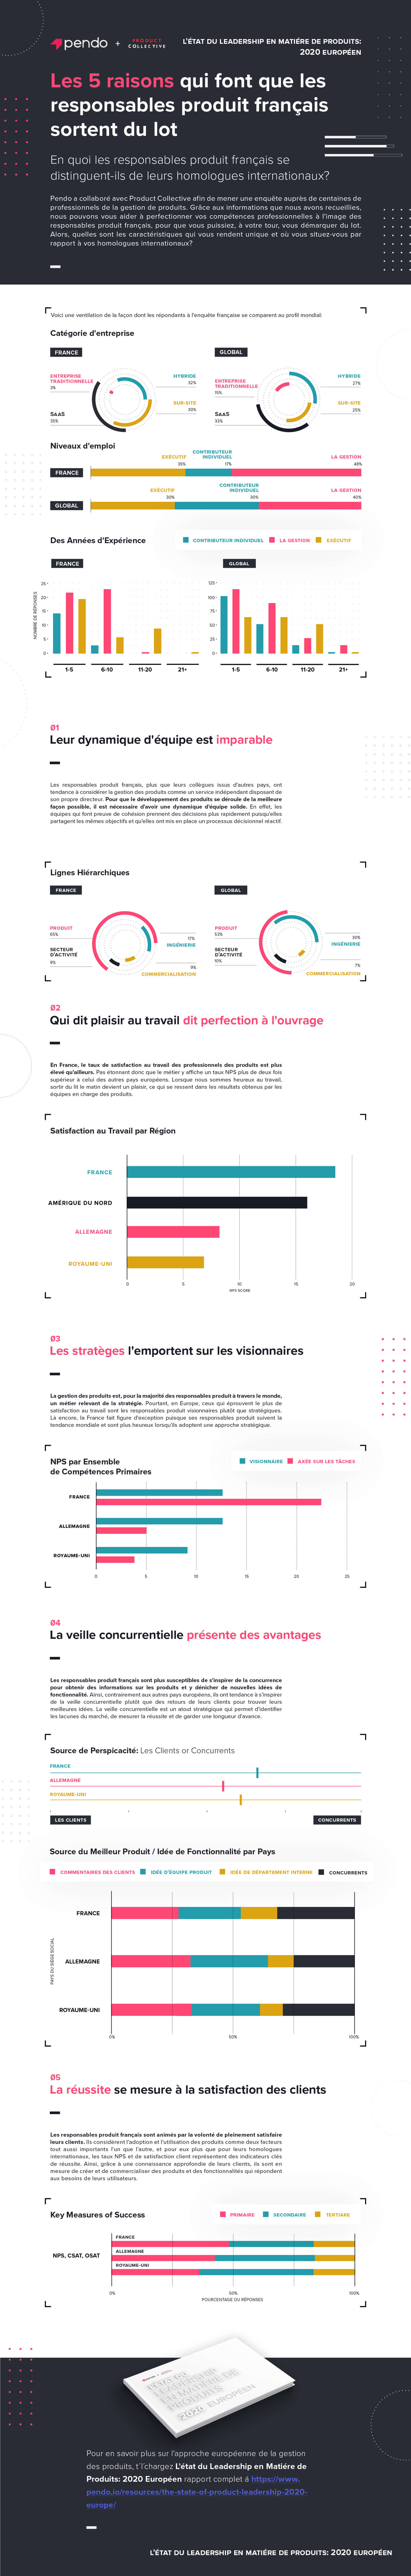 Infographie Pendo : En quoi les responsables produit français se distinguent-ils de leurs homologues internationaux ?